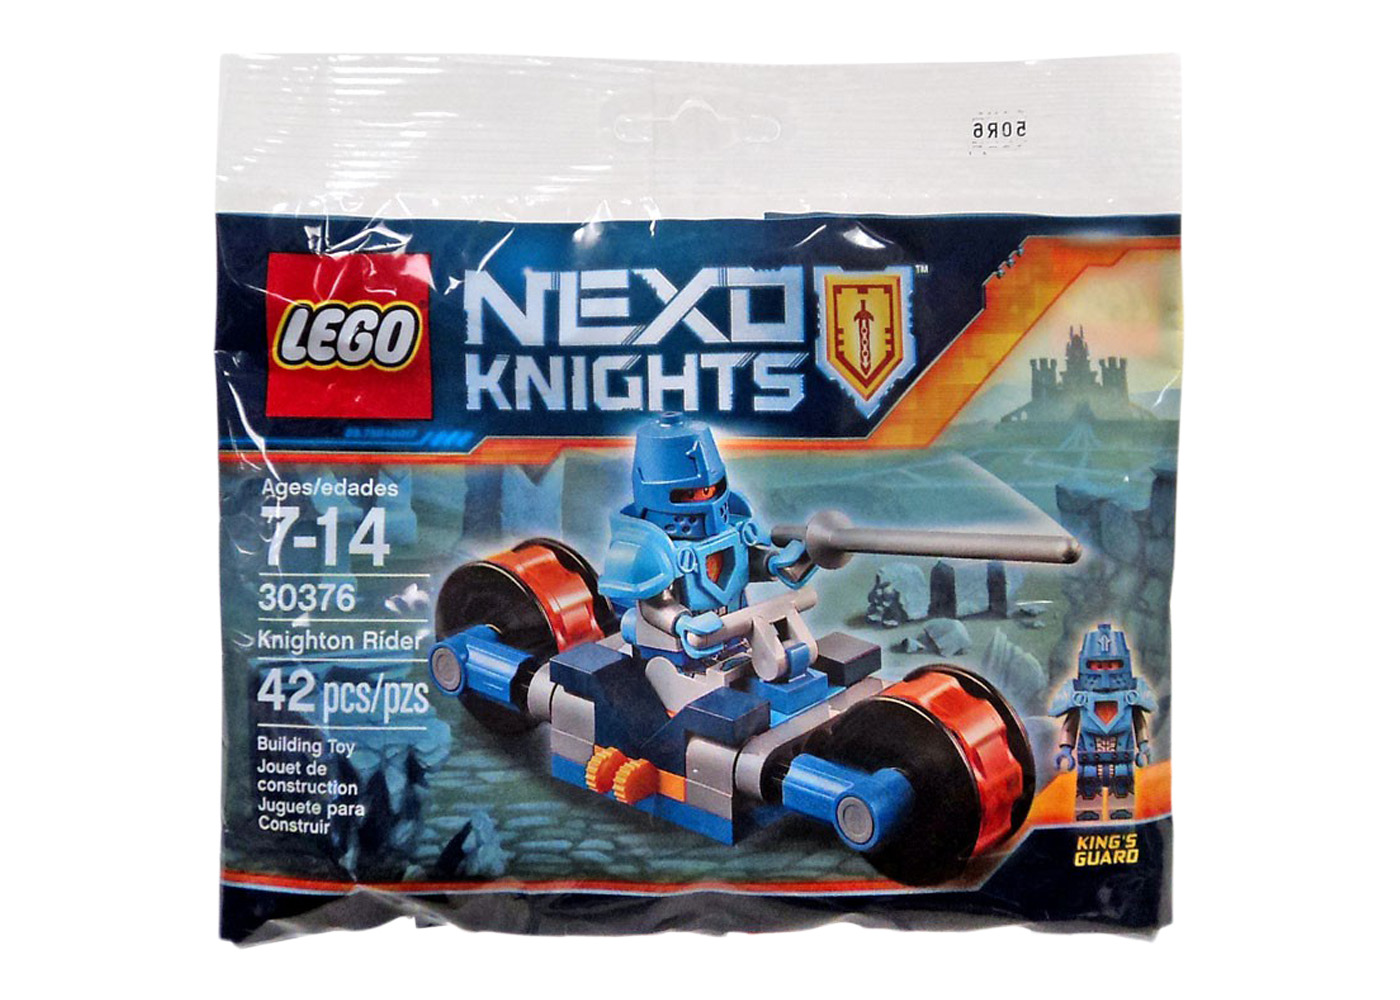 LEGO Nexo Knights Knighton Rider Set 30376 - US